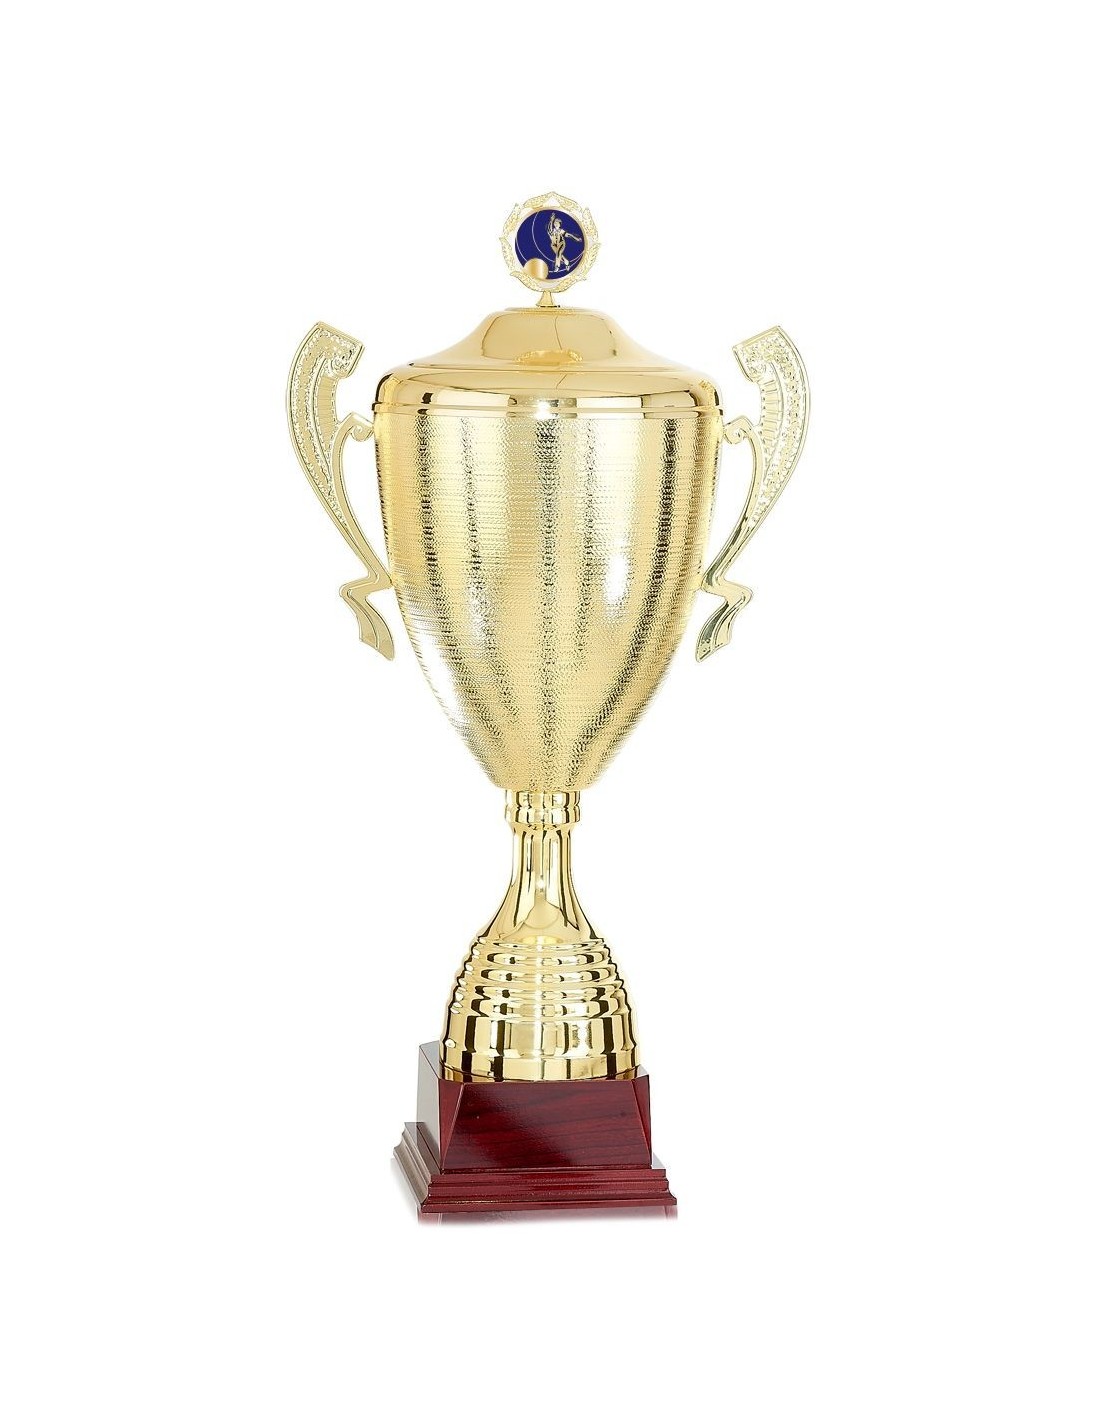 Coupe trophée personnalisable à votre sport - Achat/Vente